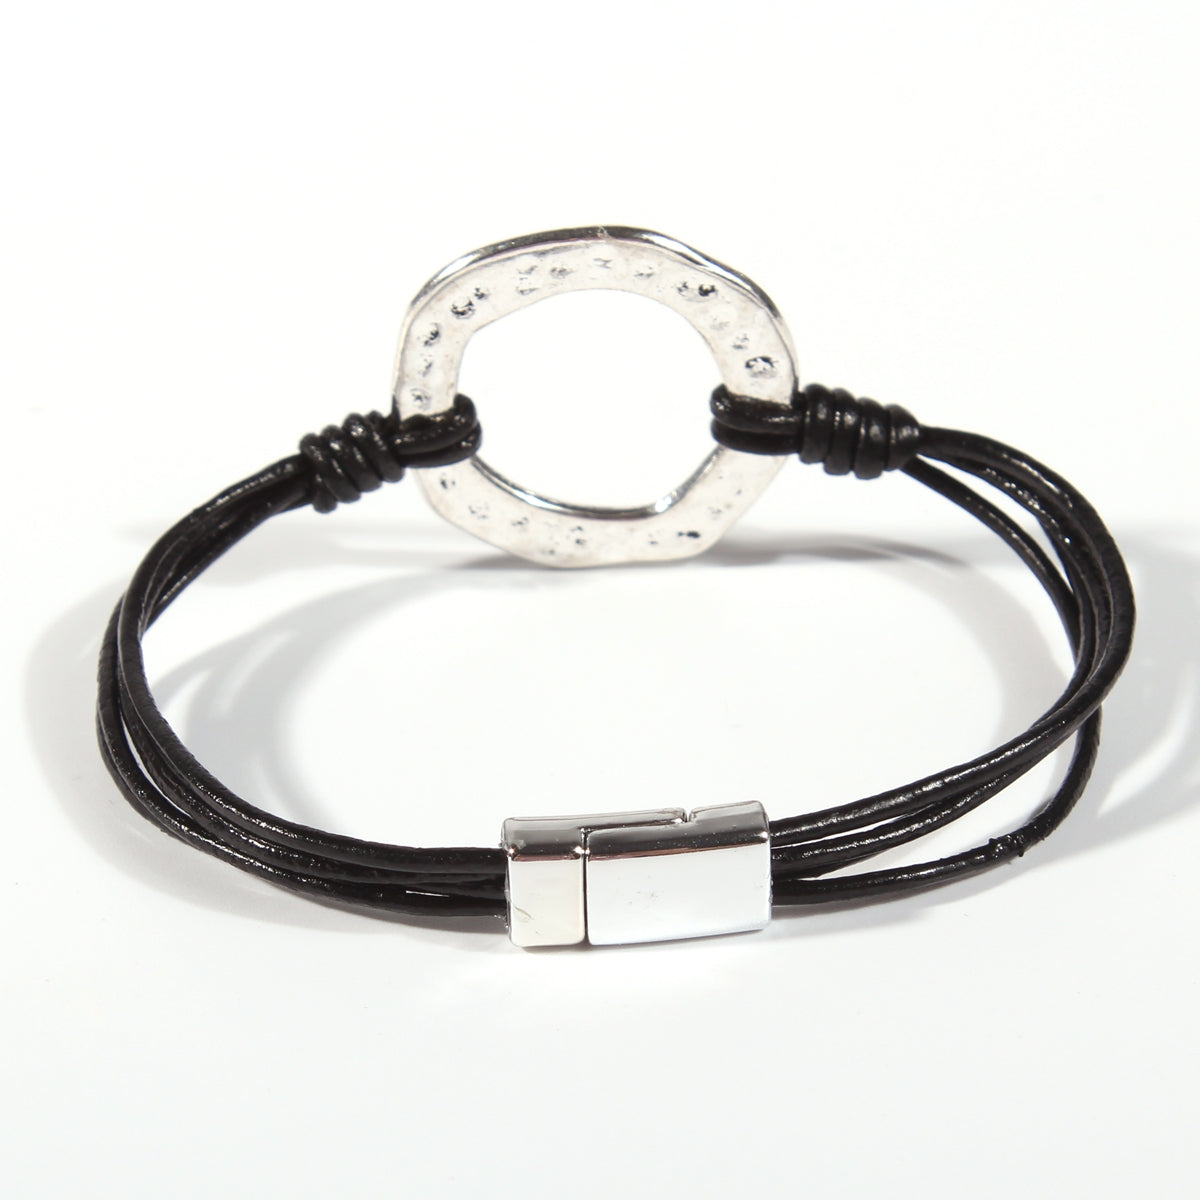 Genuine leather handmade women's bracelet MBR-02